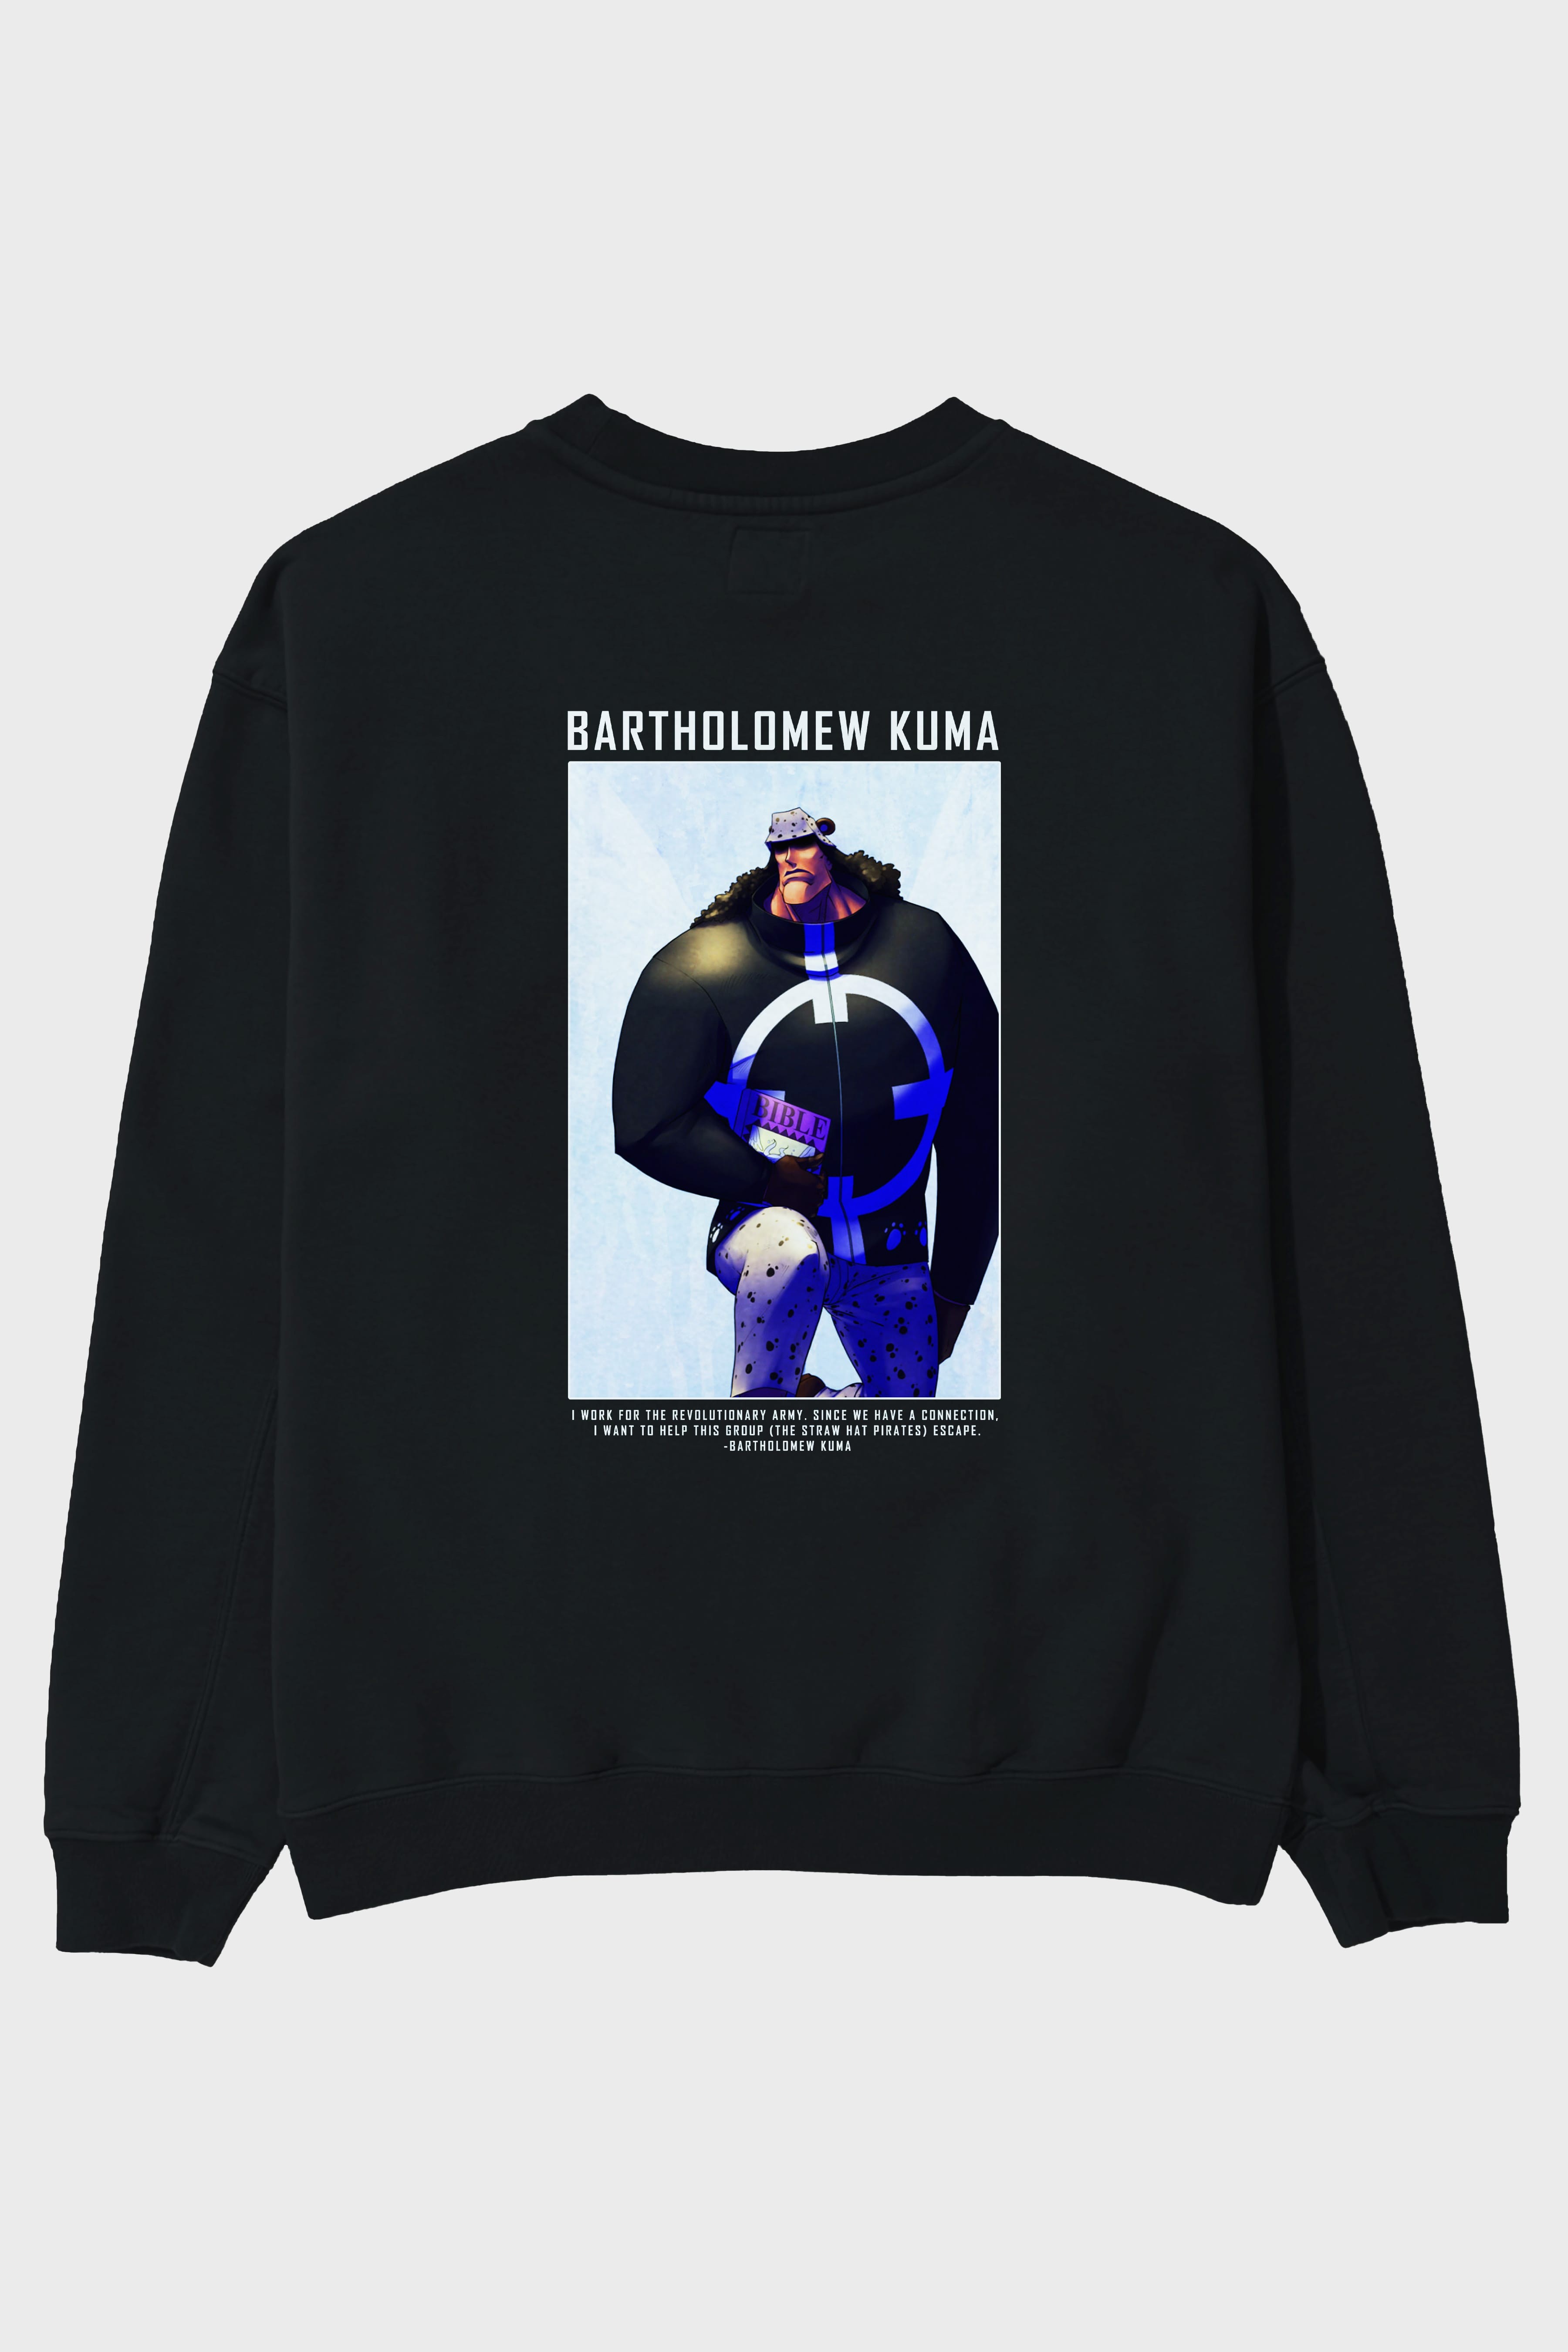 Bartholomew Kuma Arka Baskılı Anime Oversize Sweatshirt Erkek Kadın Unisex